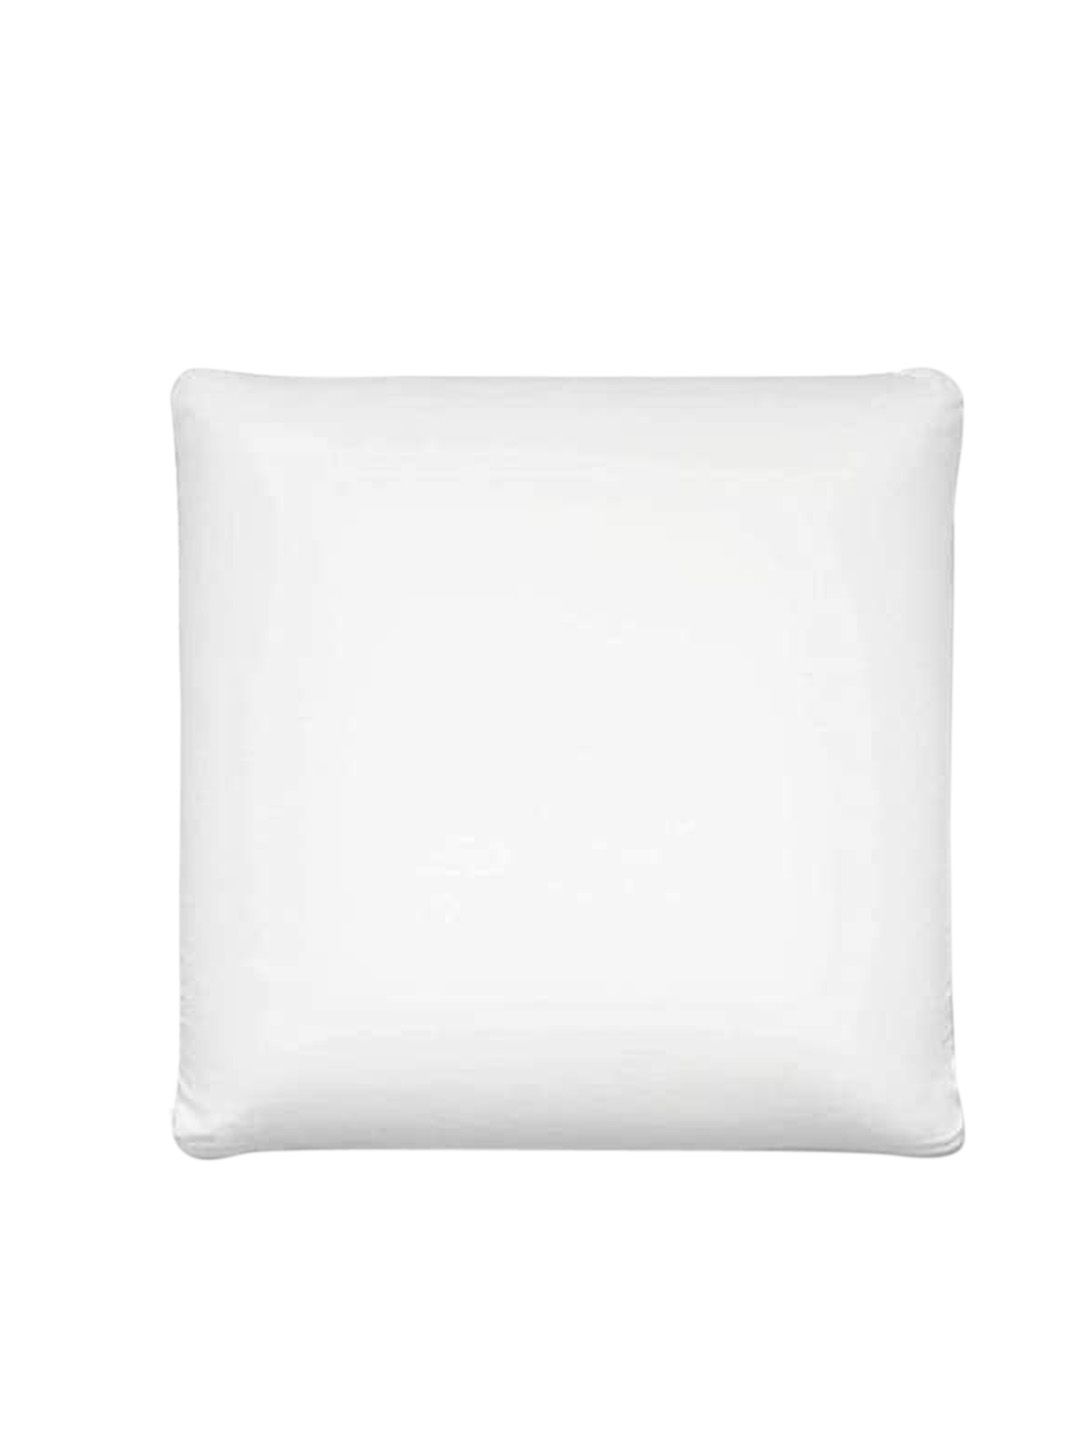 Sleepsia White Memory Foam Pillow Price in India